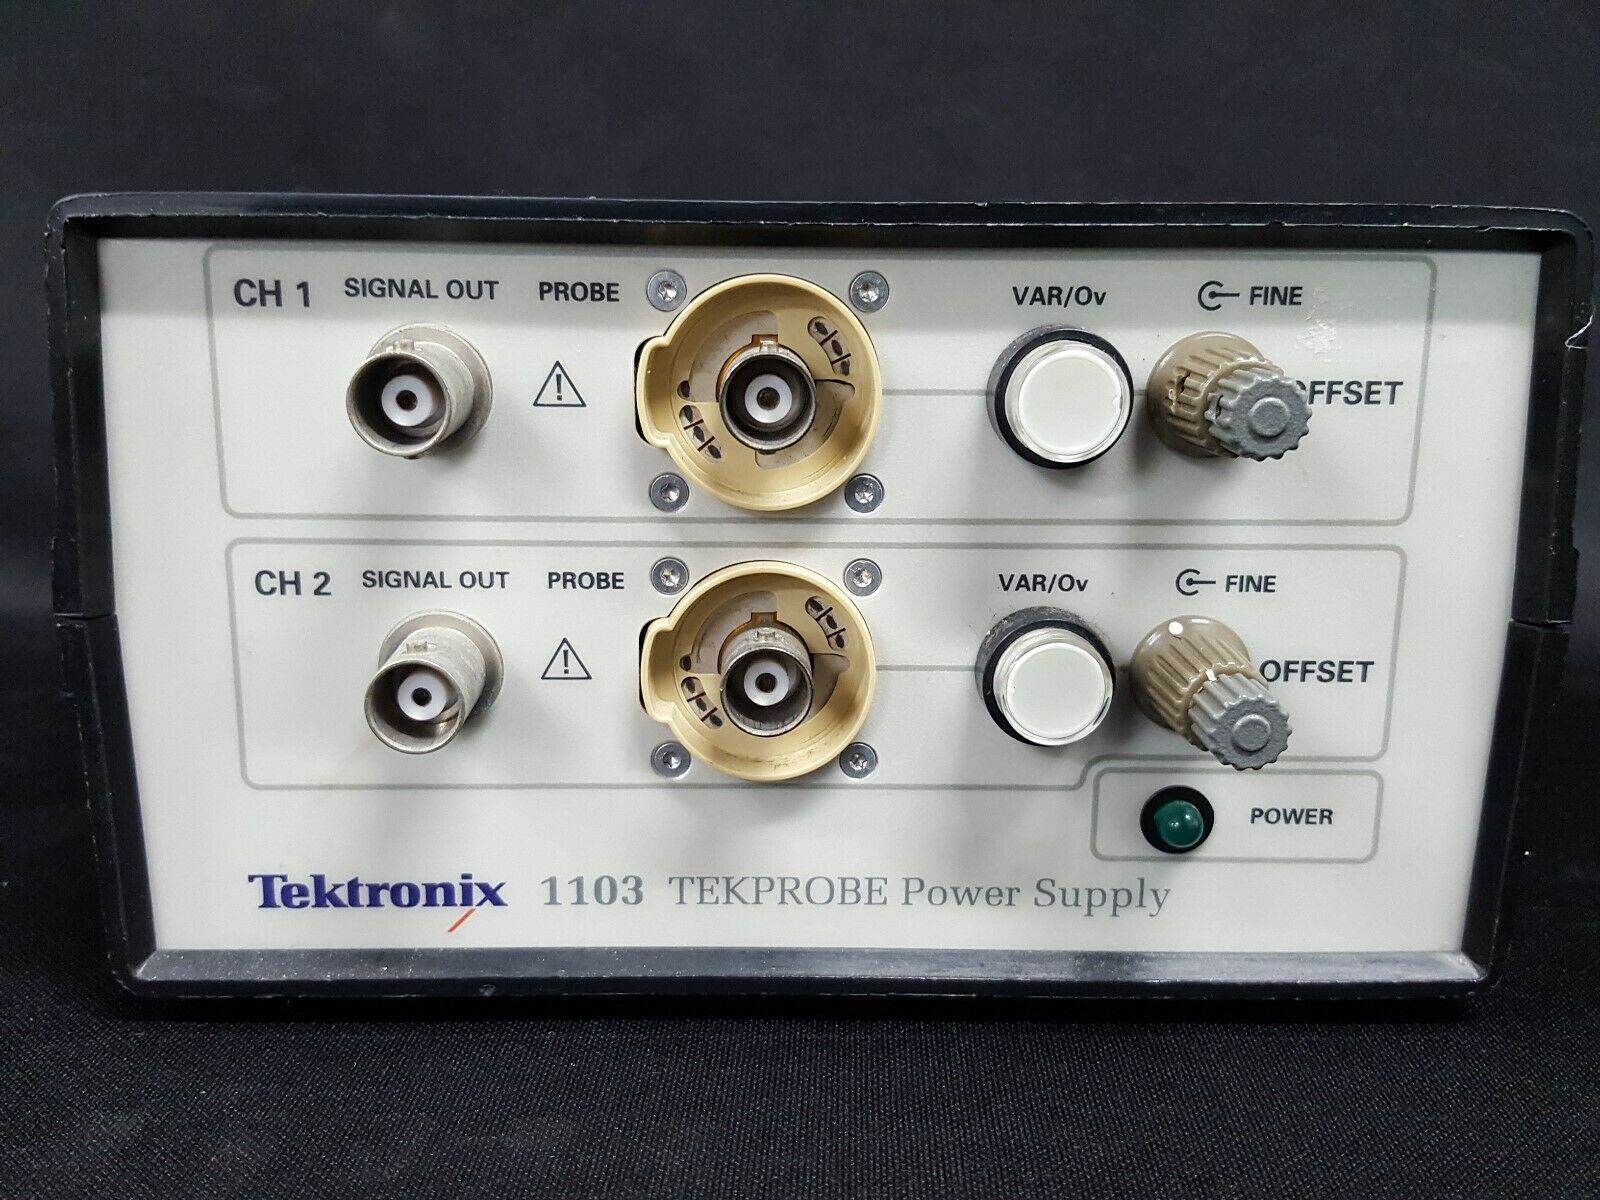 Tektronix_1103 Tekprobe Power Supply